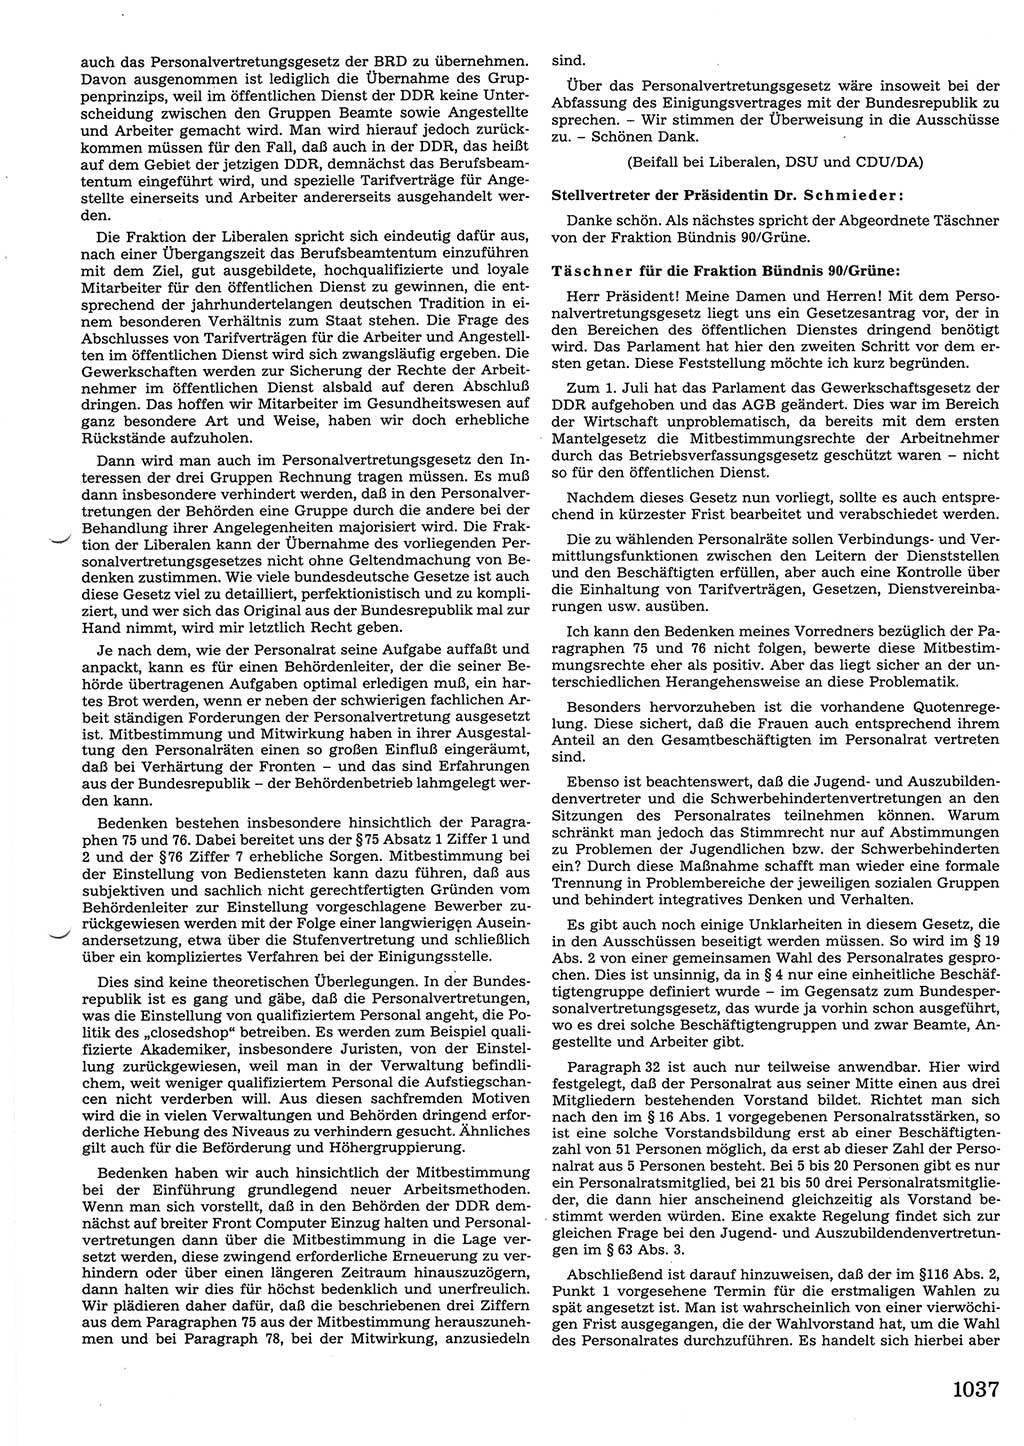 Tagungen der Volkskammer (VK) der Deutschen Demokratischen Republik (DDR), 10. Wahlperiode 1990, Seite 1037 (VK. DDR 10. WP. 1990, Prot. Tg. 1-38, 5.4.-2.10.1990, S. 1037)